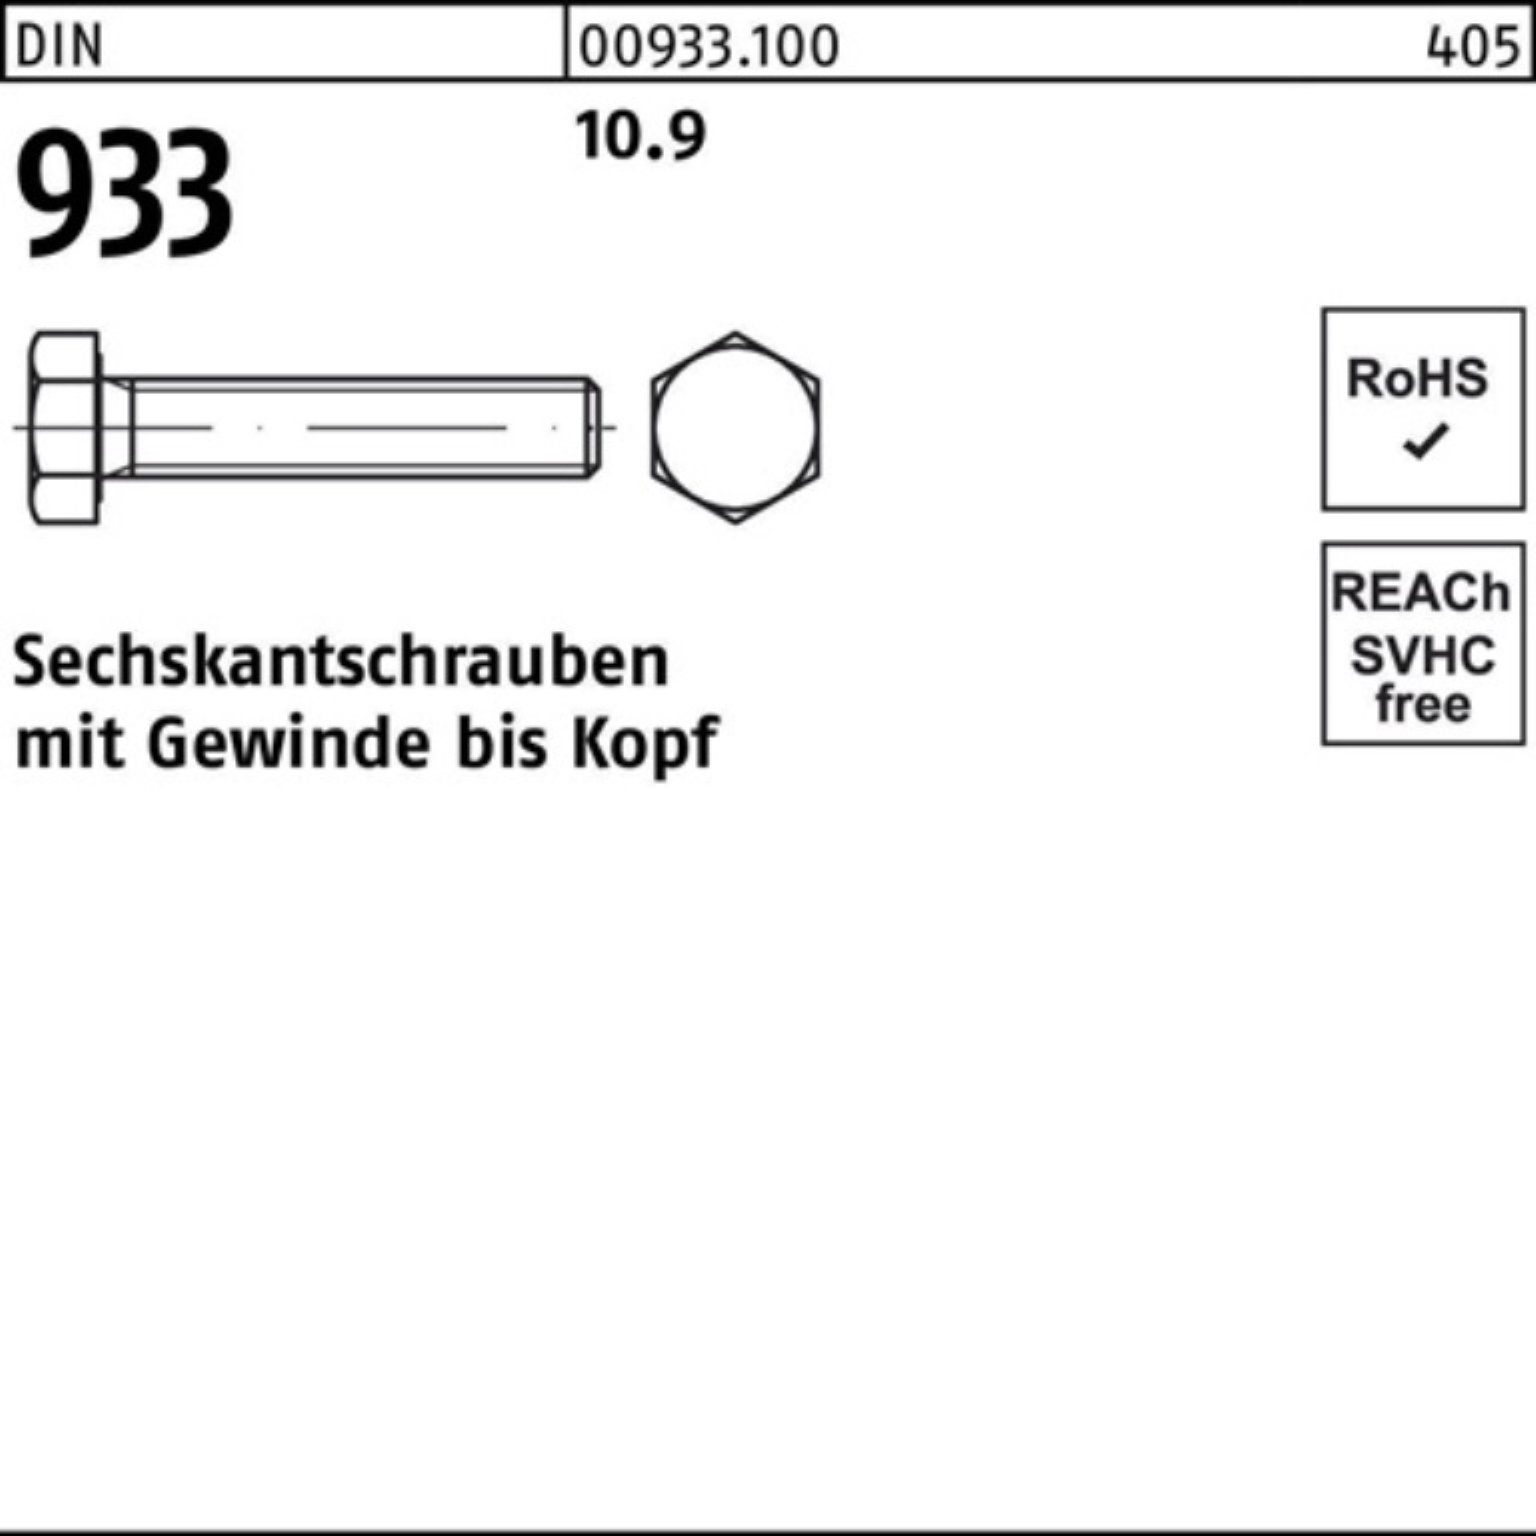 Reyher Sechskantschraube 100er Pack Sechskantschraube 10.9 Stück VG 933 M8x 180 DIN 93 DIN 100